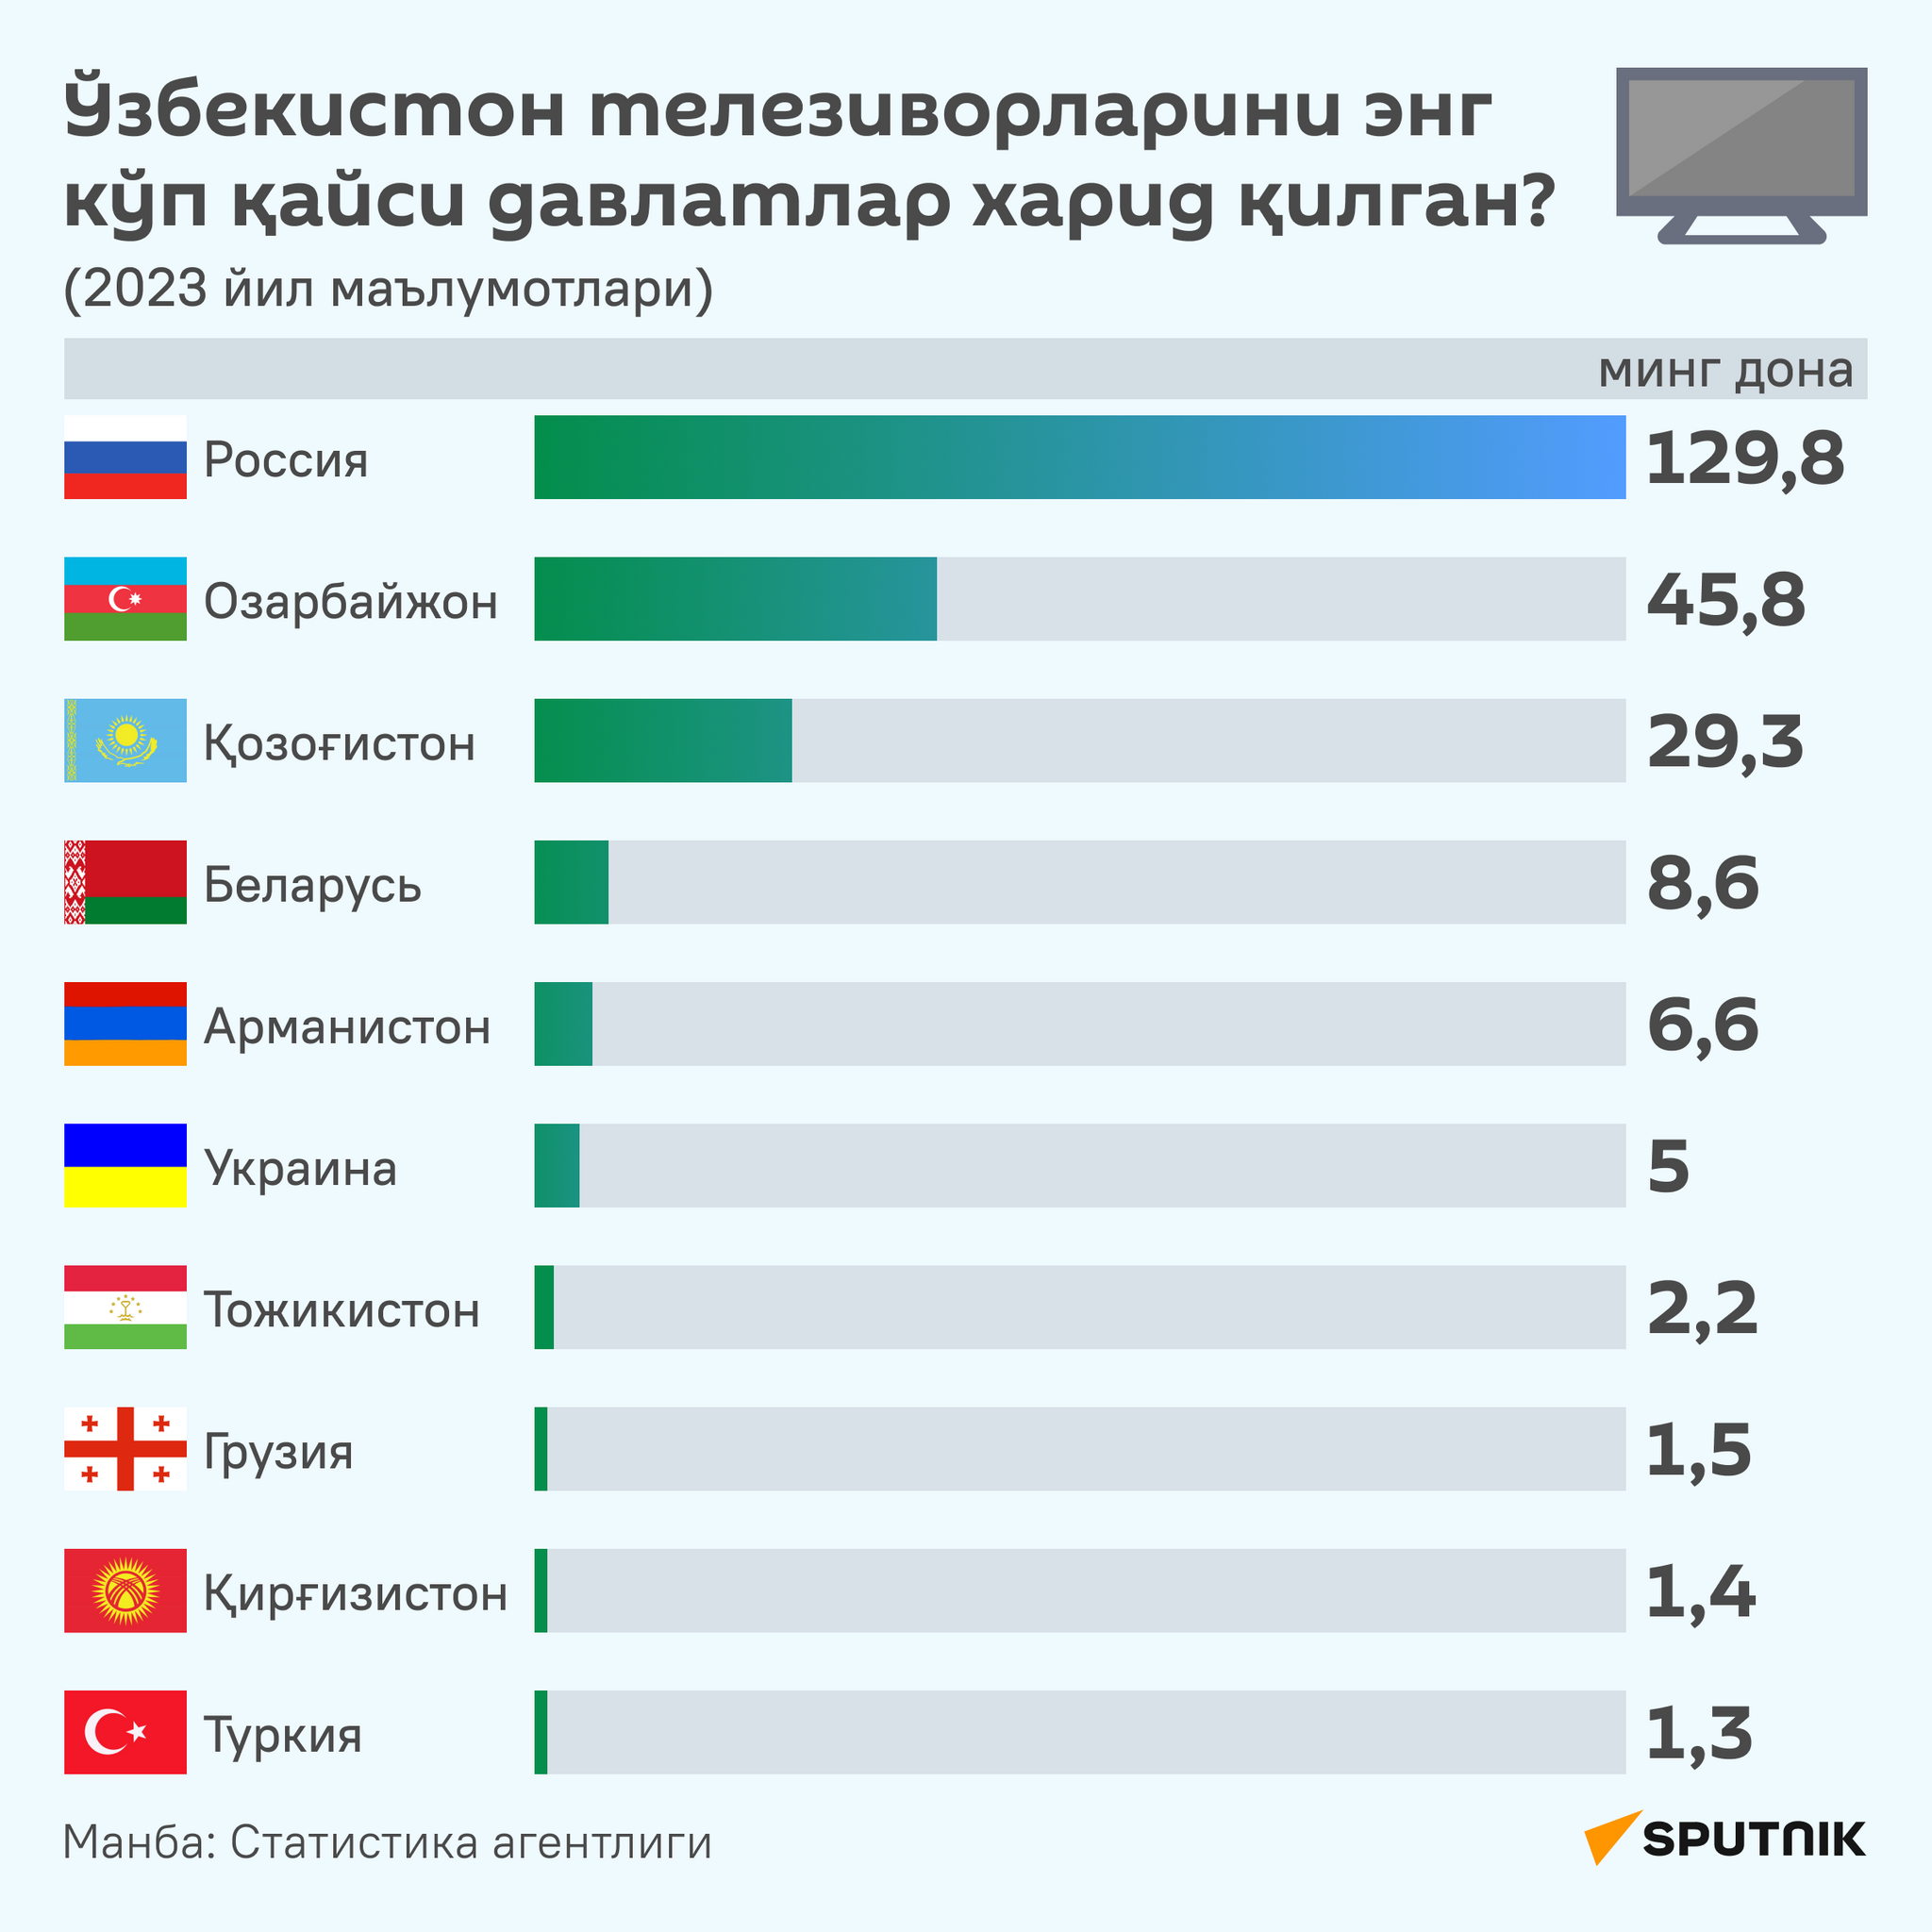 Какие страны закупили больше всего телевизоров из Узбекистана в 2023 году - Sputnik Ўзбекистон